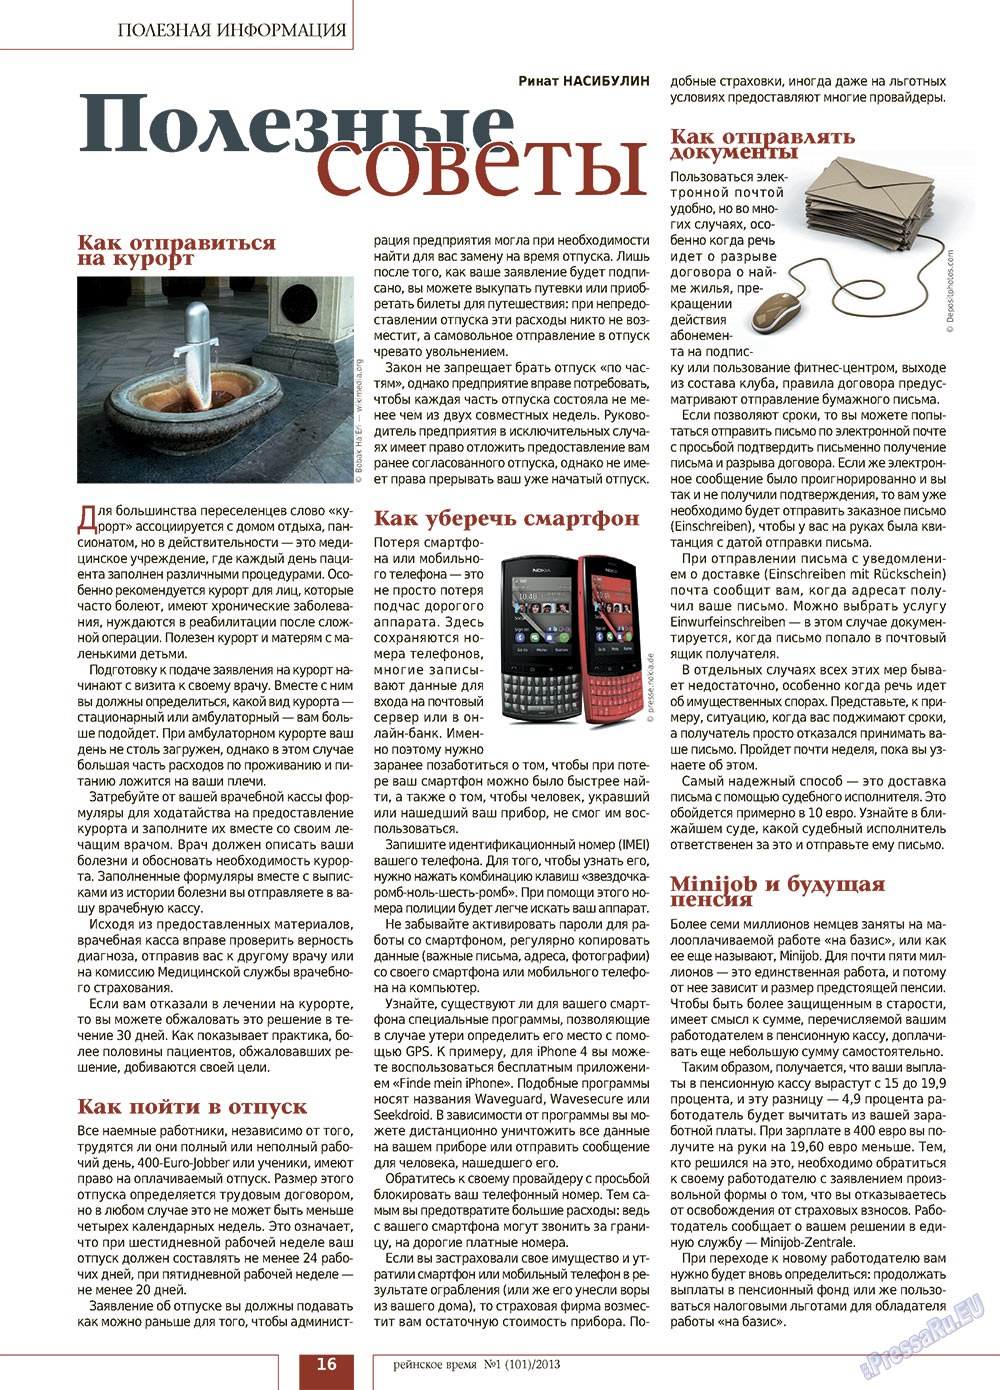 Рейнское время (журнал). 2013 год, номер 1, стр. 16